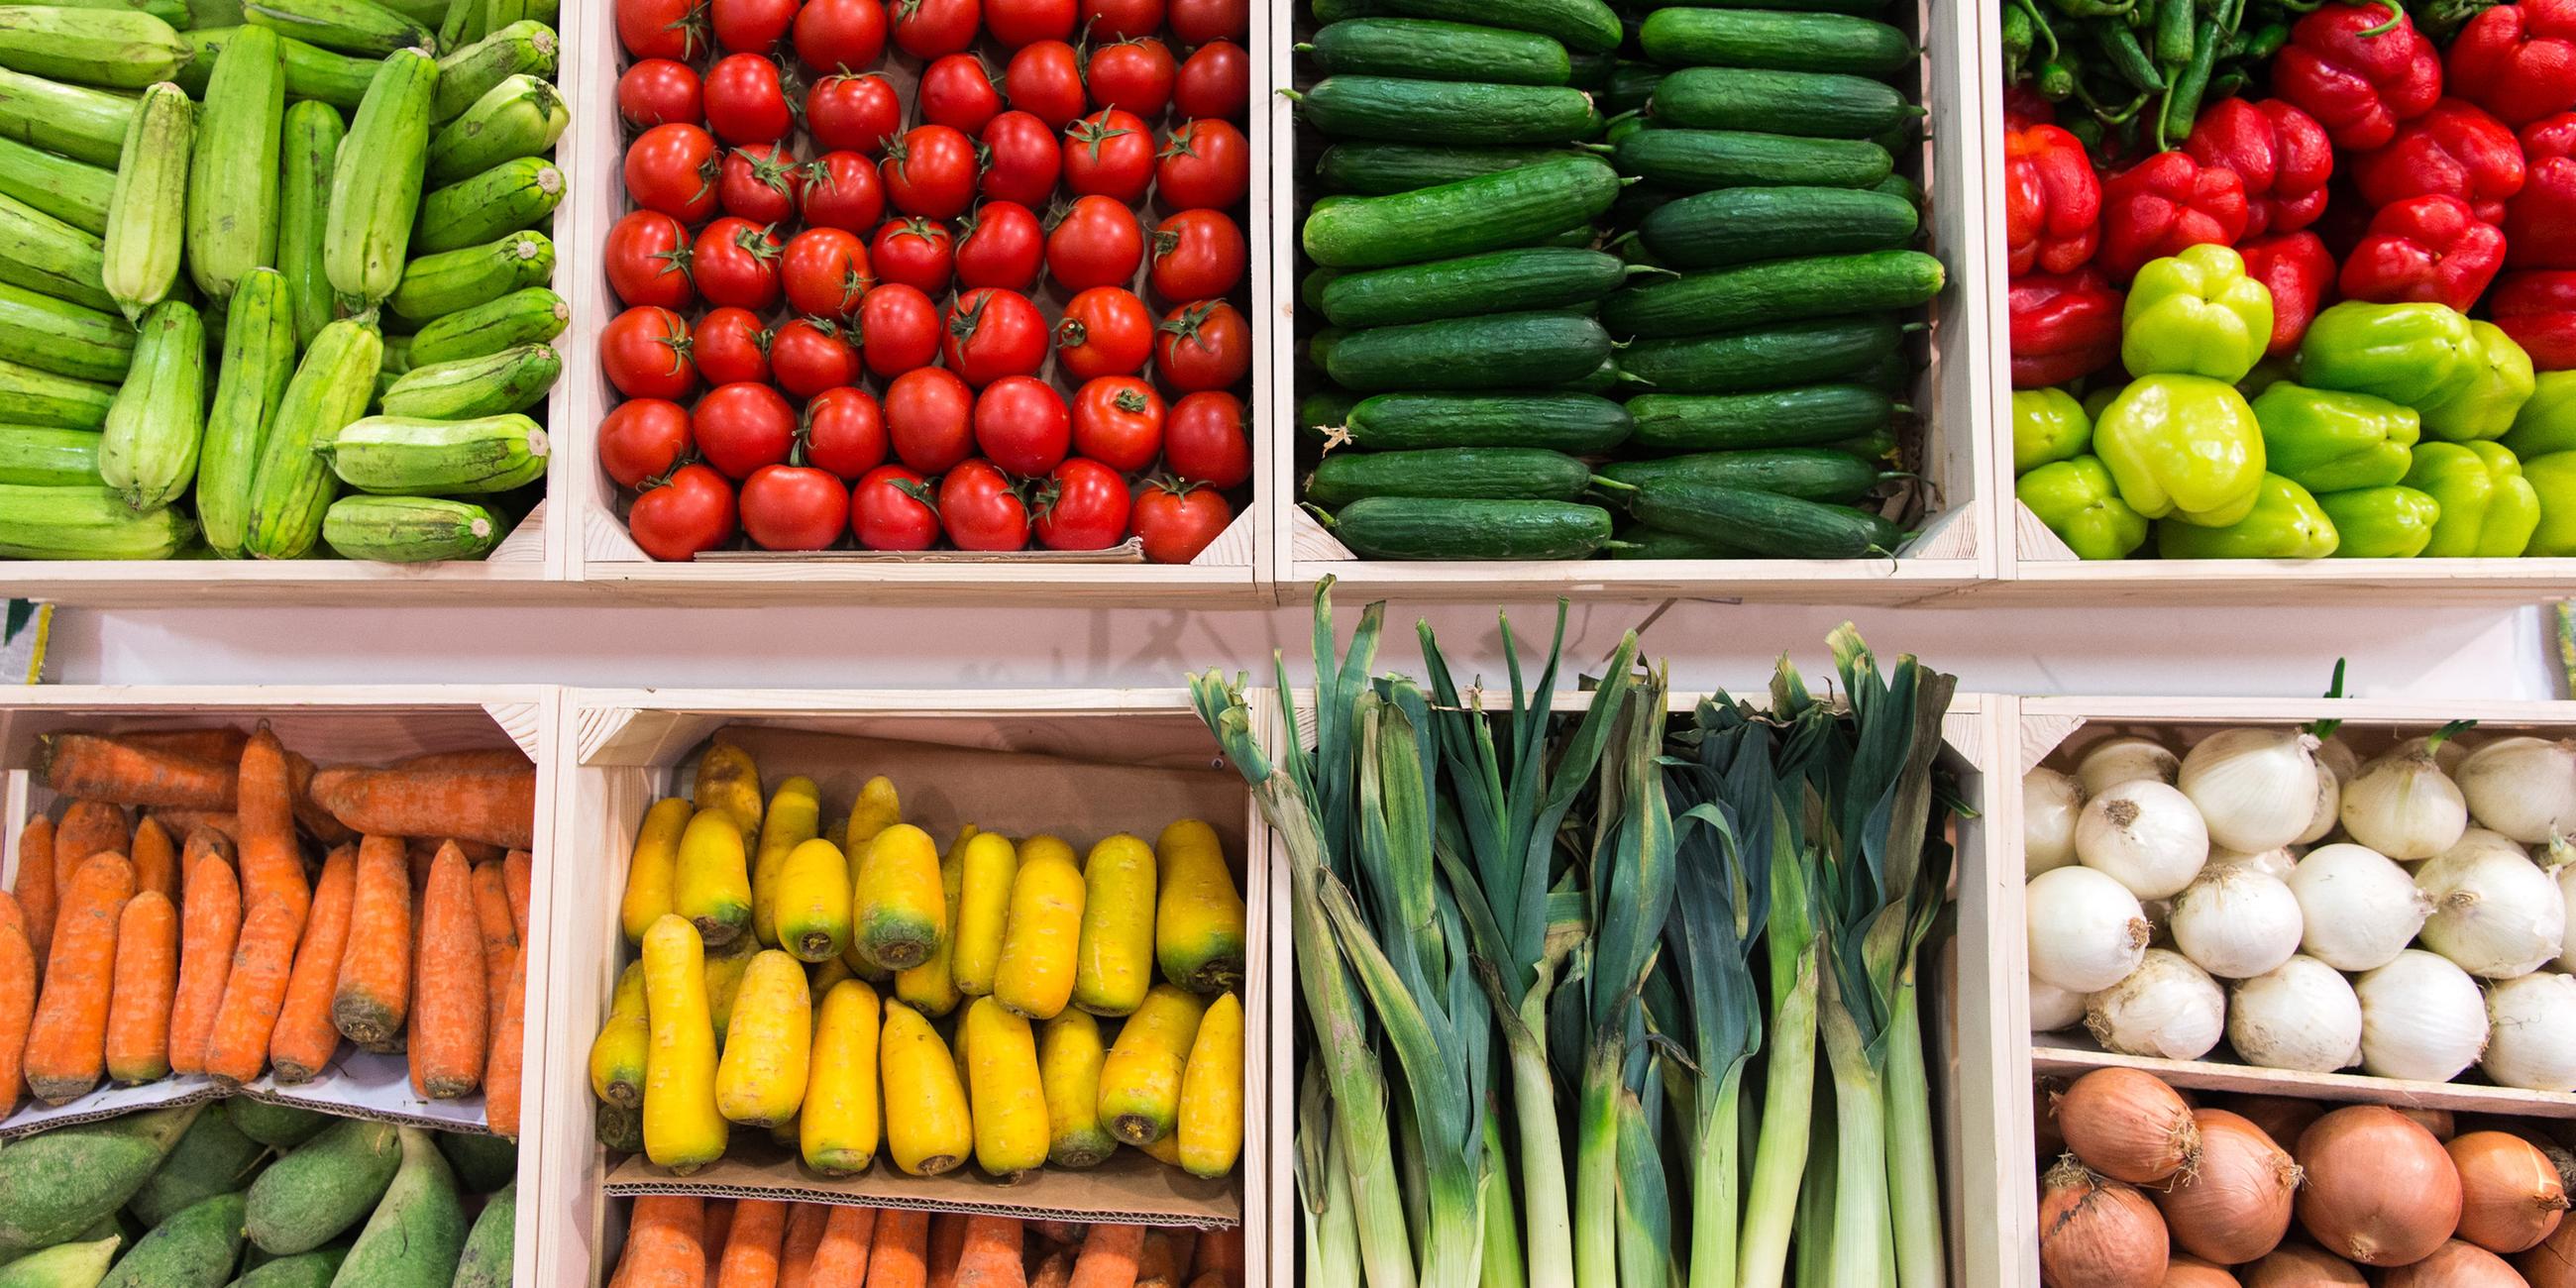 Gurken, Tomaten, Zucchini, Paprika: Diese und verschiedene weitere Gemüsesorten sind in Kisten nebeneinander aufgereiht.